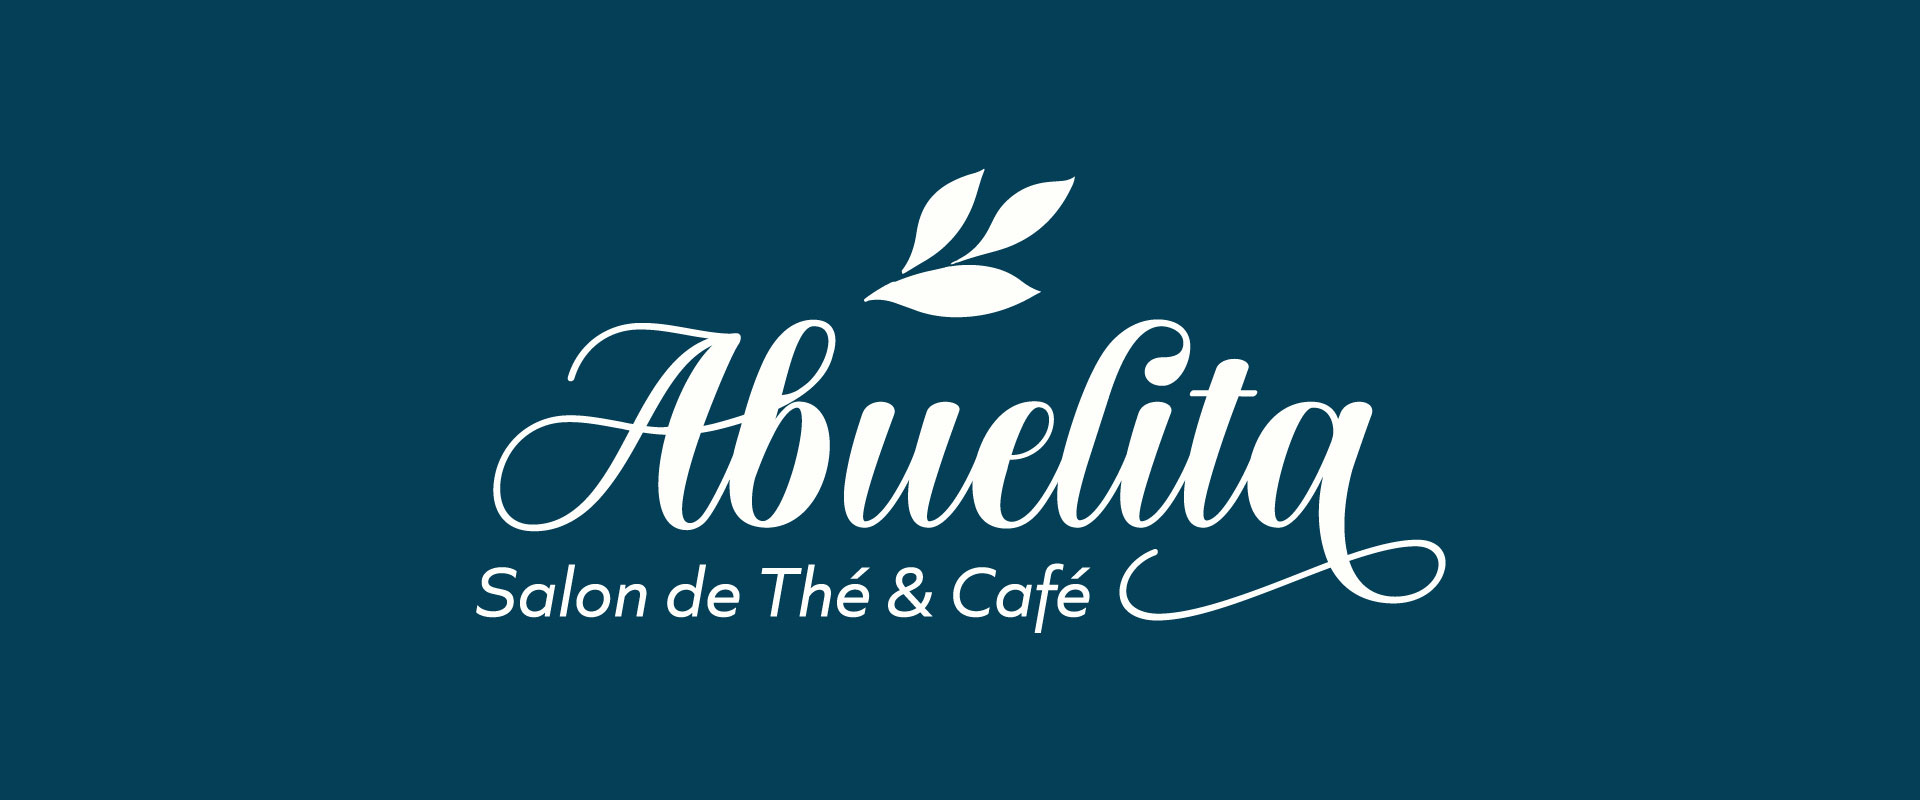 abuelita salon de the cafe creation logo identite visuelle site internet agence owmel saint gilles croix de vie vendee